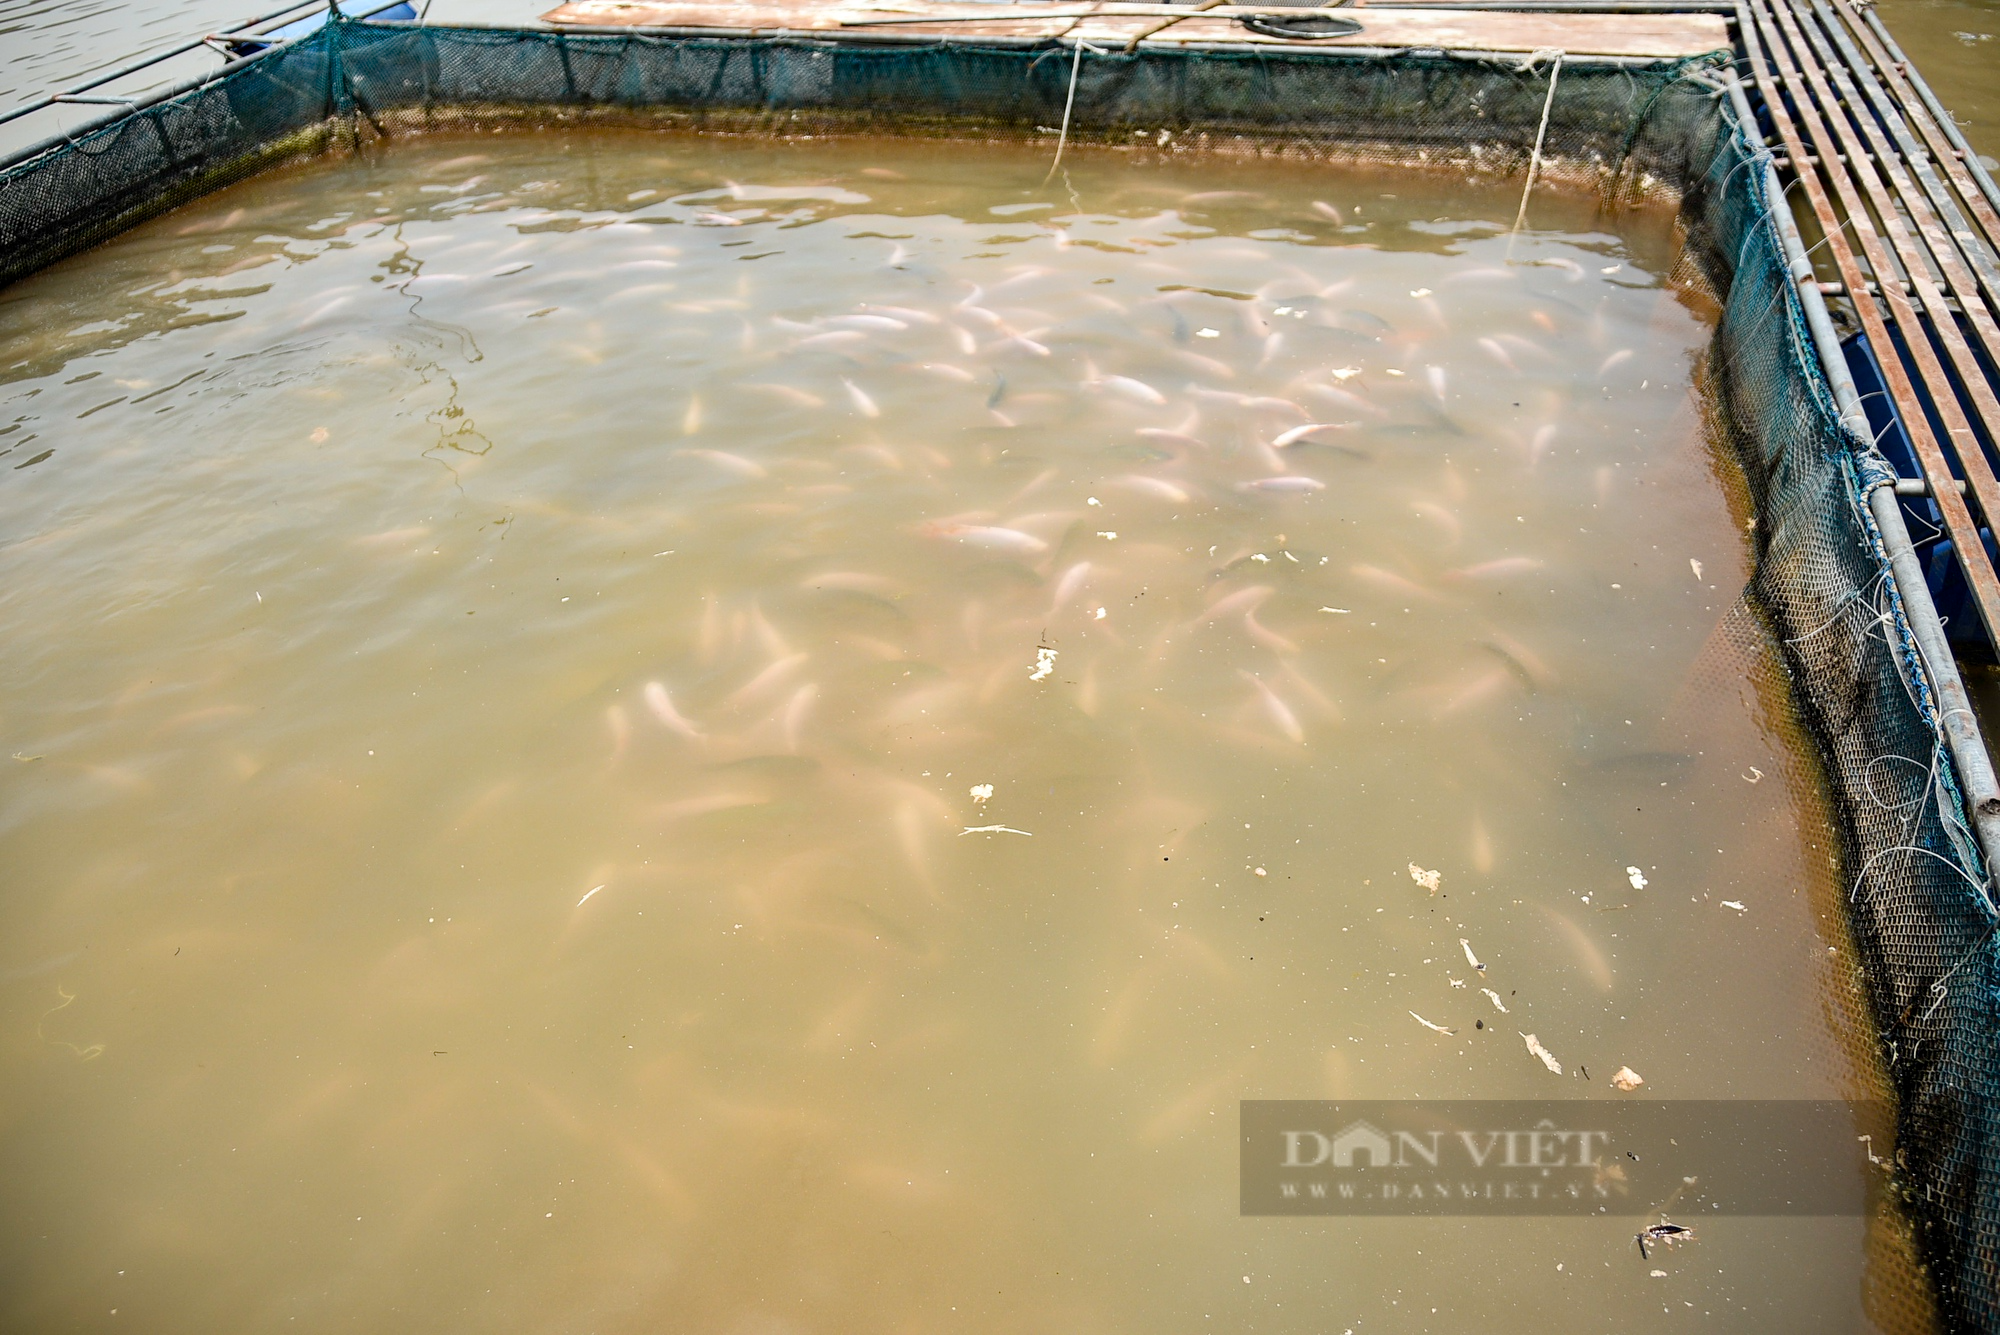 Nước sông Đà cạn đột ngột, người nuôi cá lồng thiệt hại hàng tỷ đồng - Ảnh 8.